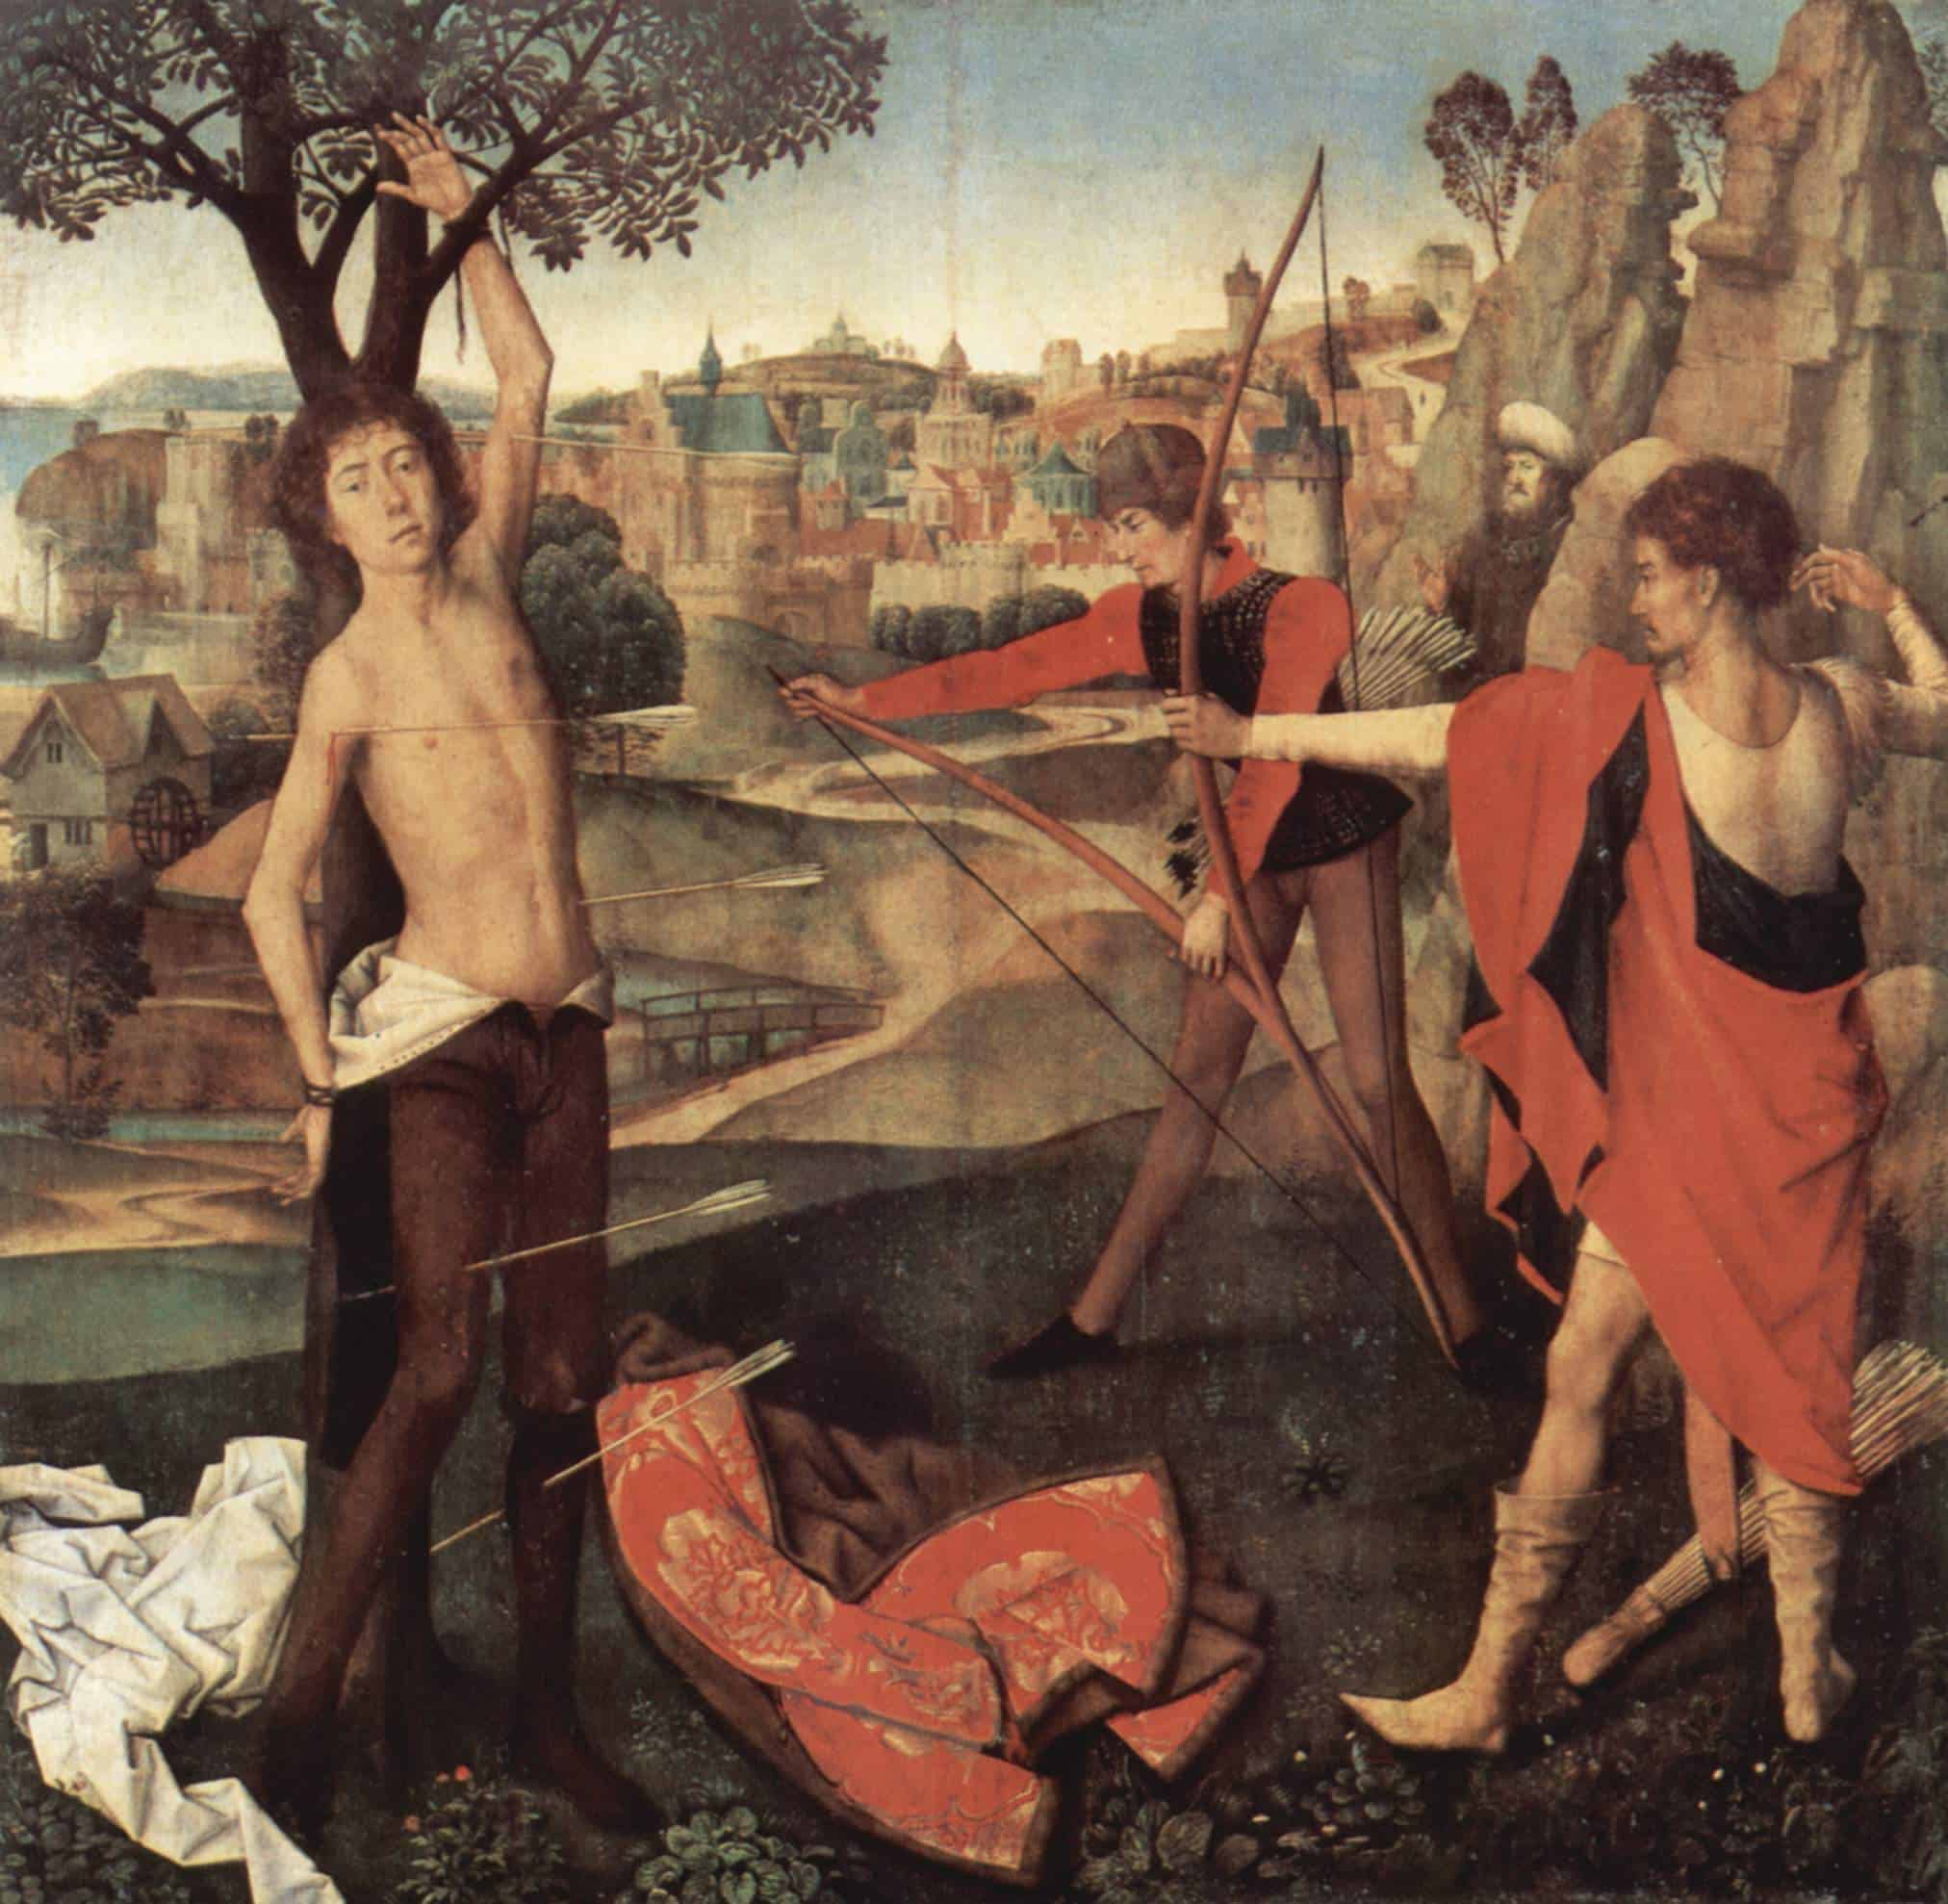 Op een schilderij is een vastgebonden, gedeeltelijk geklede man afgebeeld die met een pijl wordt neergeschoten door twee boogschutters die handboogschieten beoefenen. De achtergrond toont een heuvelachtig landschap met een klein stadje.